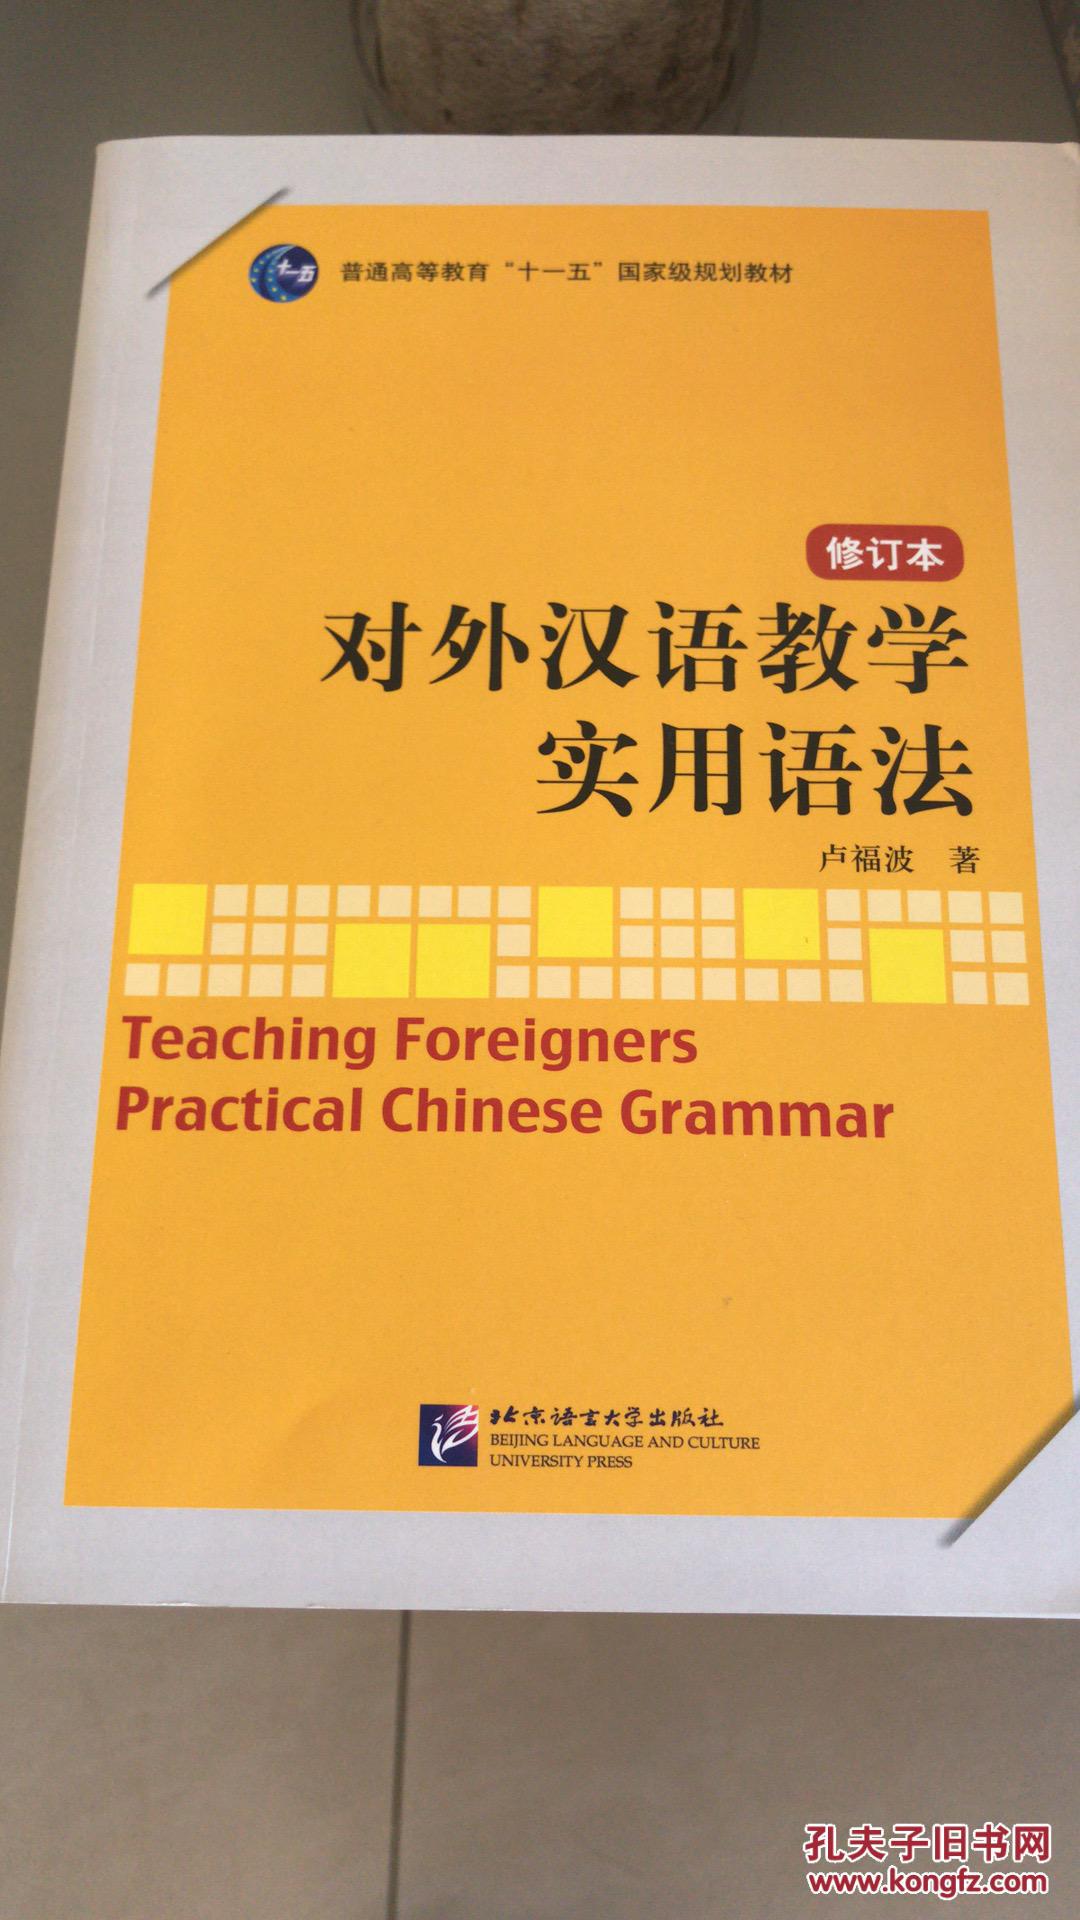 精辟的见解
:对外汉语教学